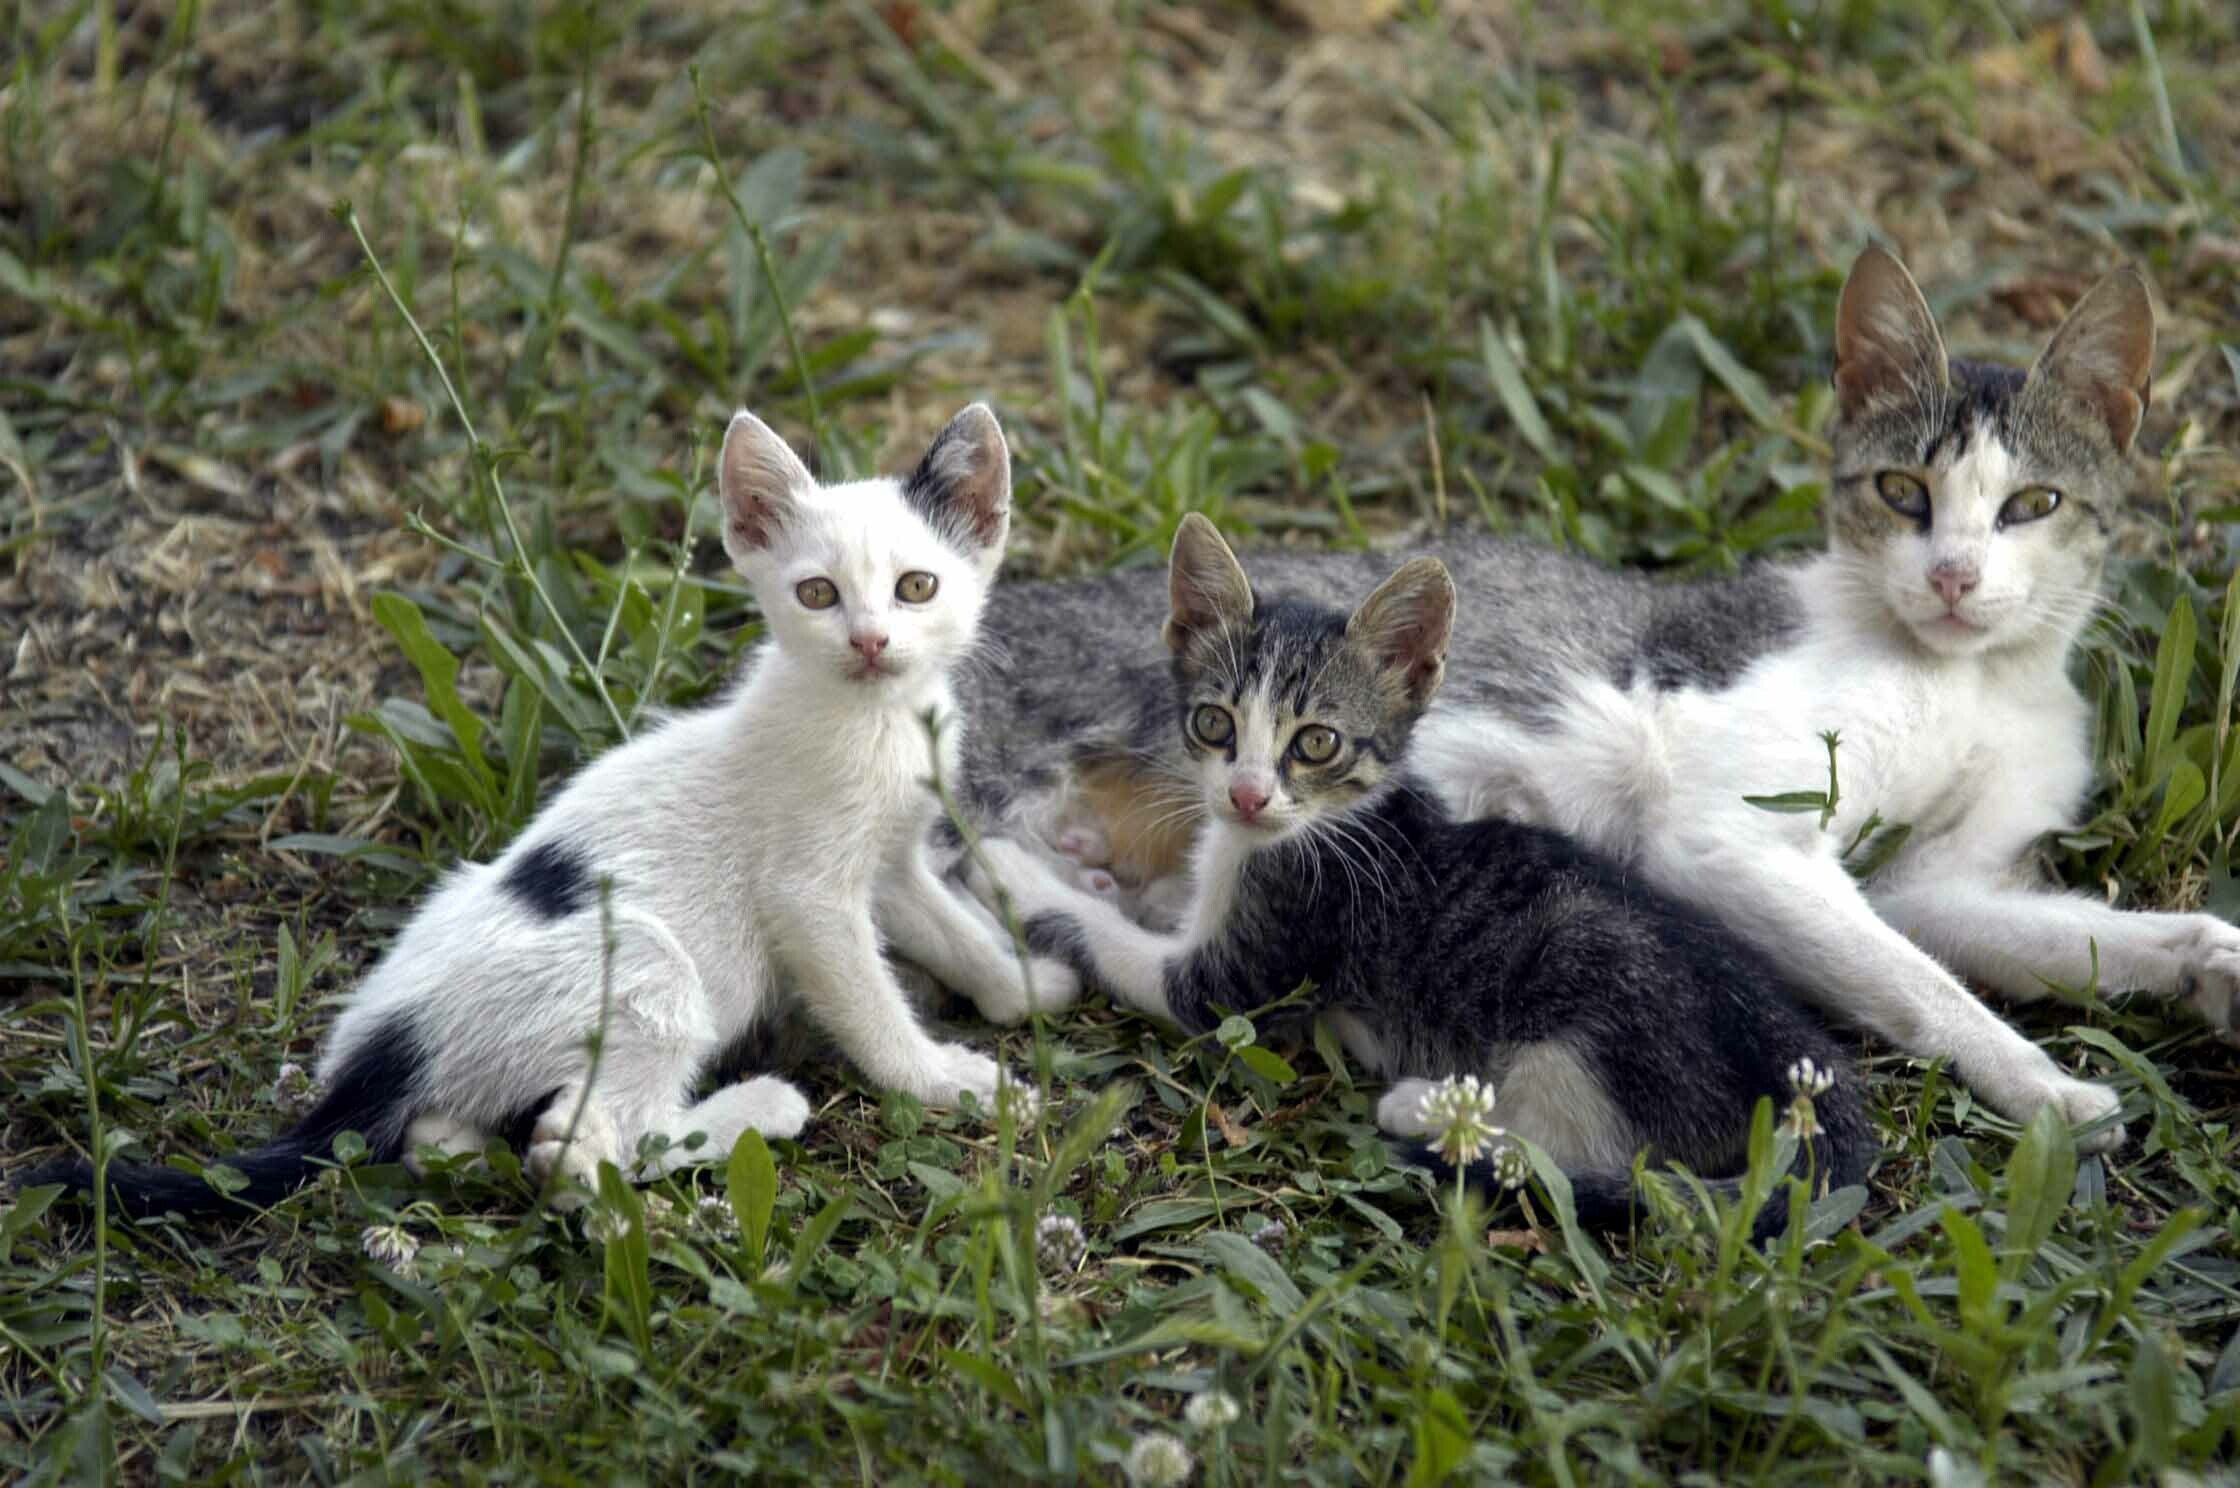 Άγνωστοι αναμένεται να παγιδεύσουν γάτους στη Δρομολαξιά